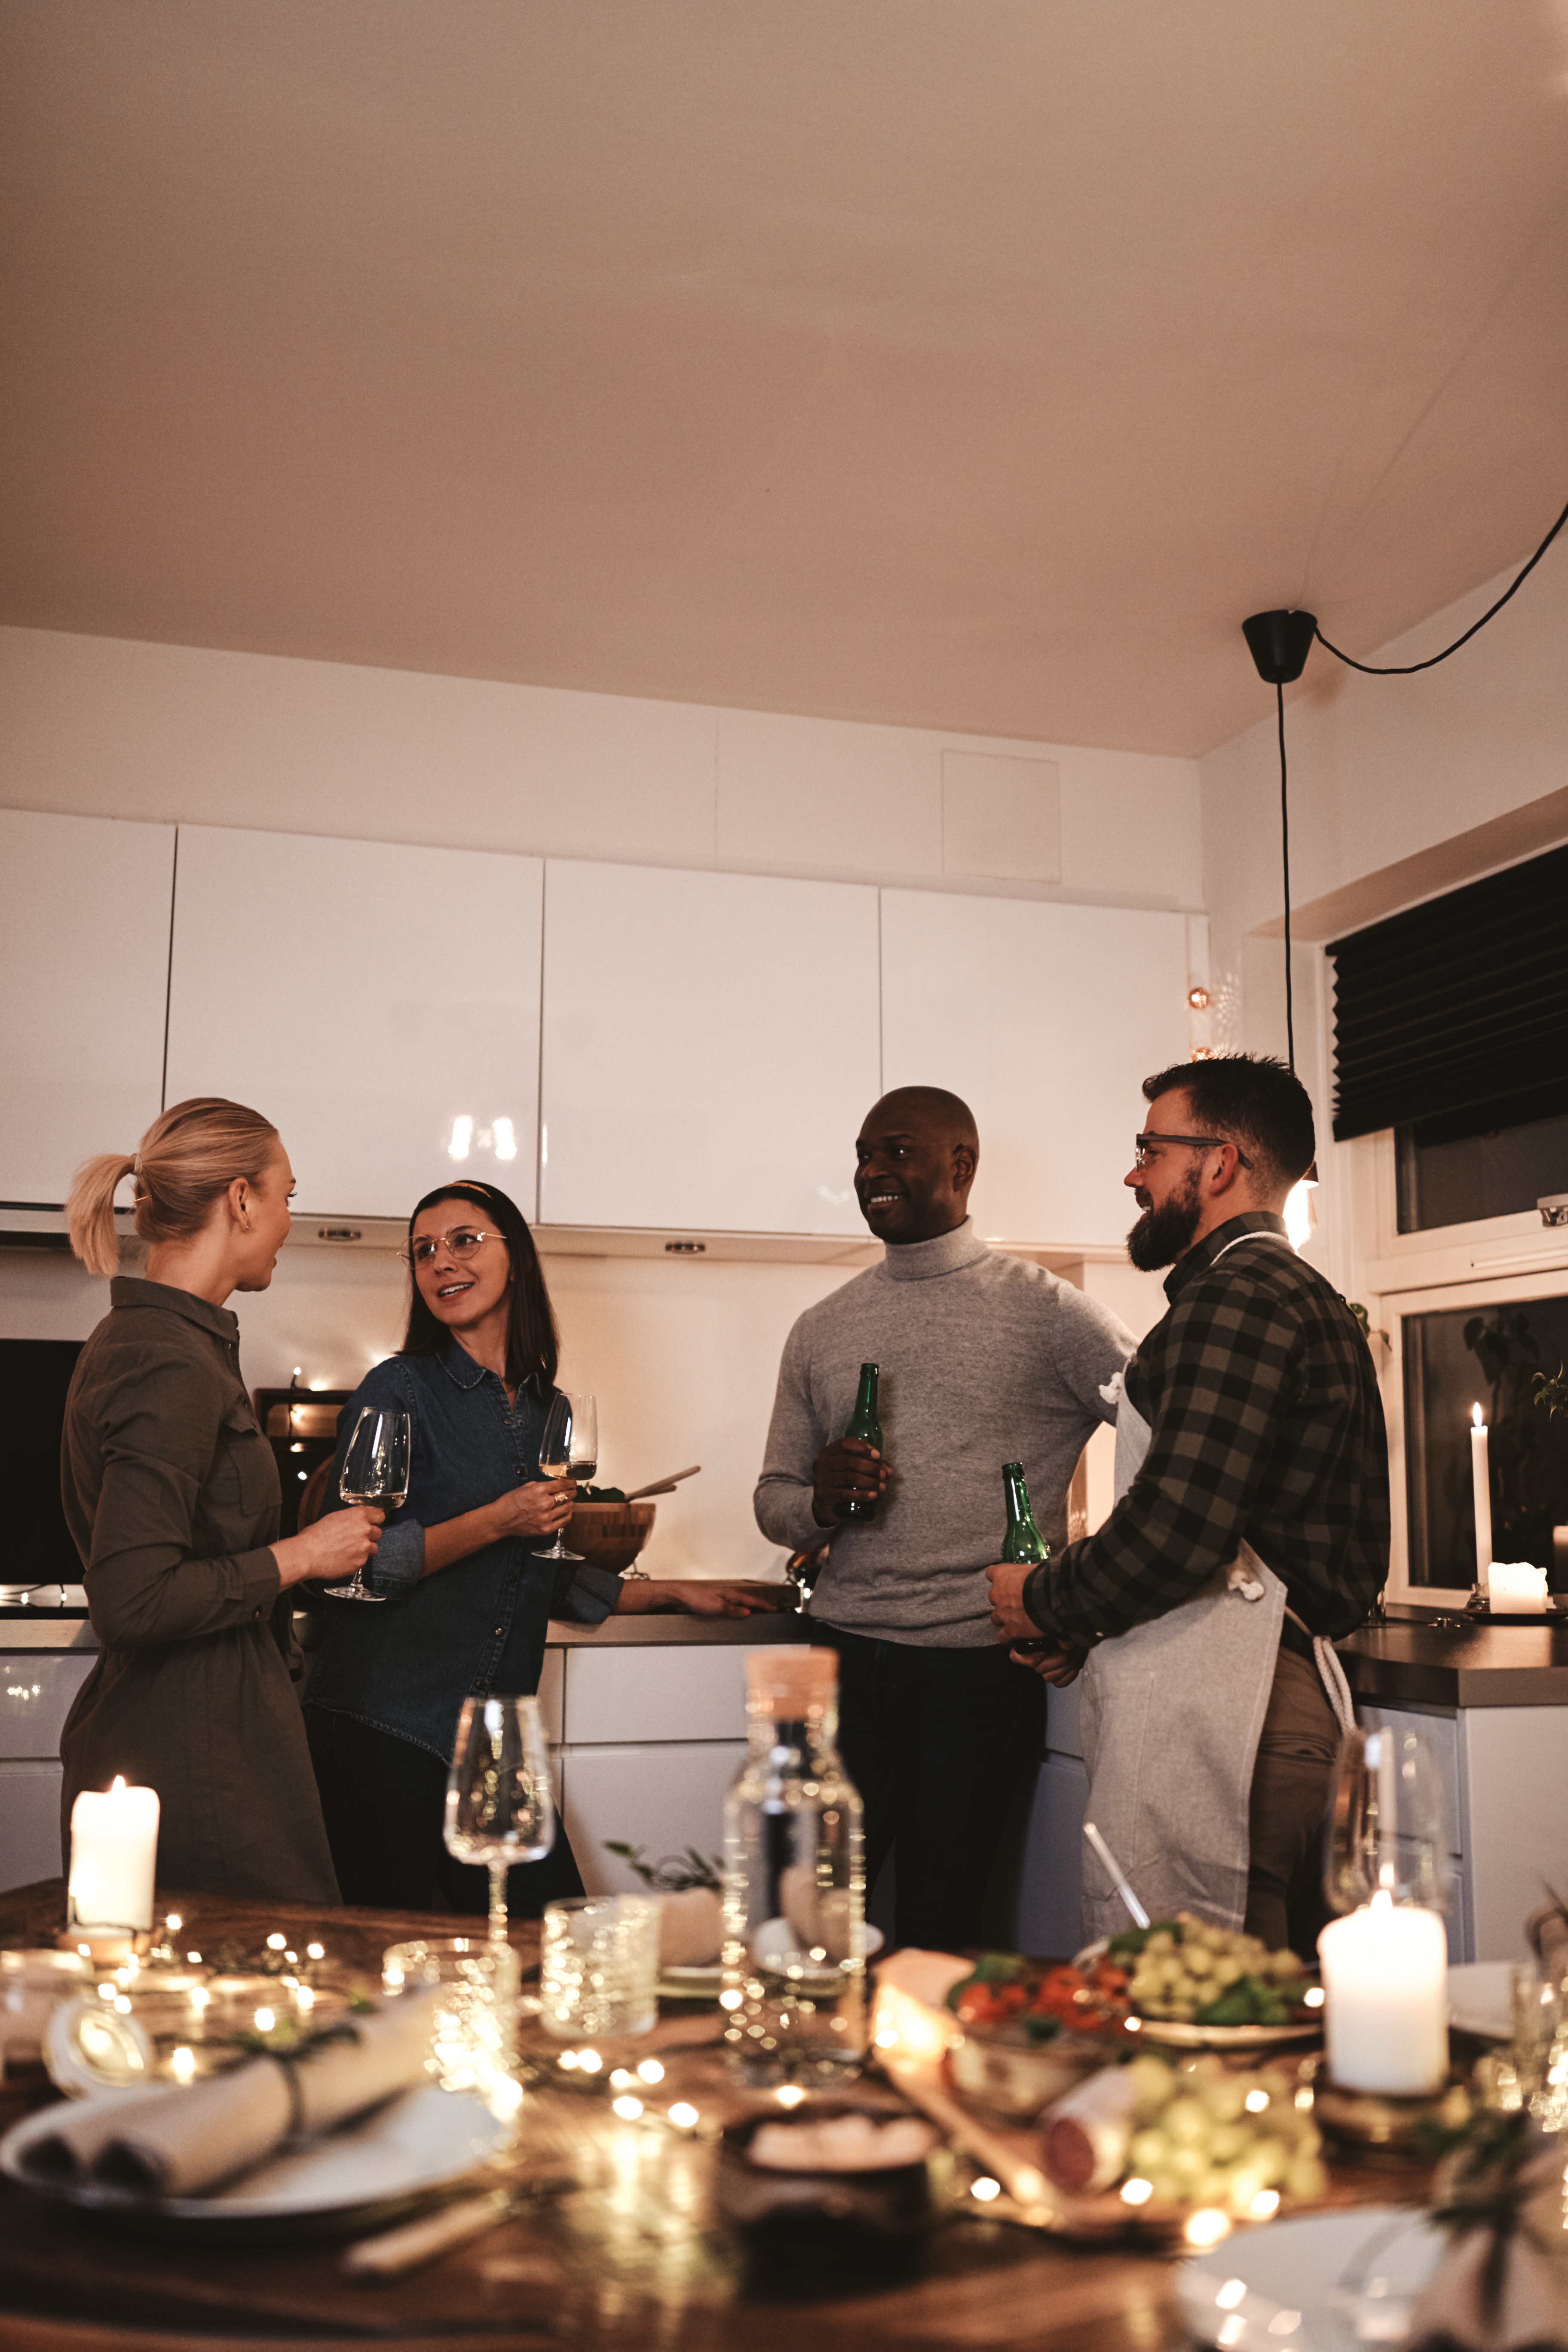 Un groupe de personnes dans la cuisine | Source : Shutterstock